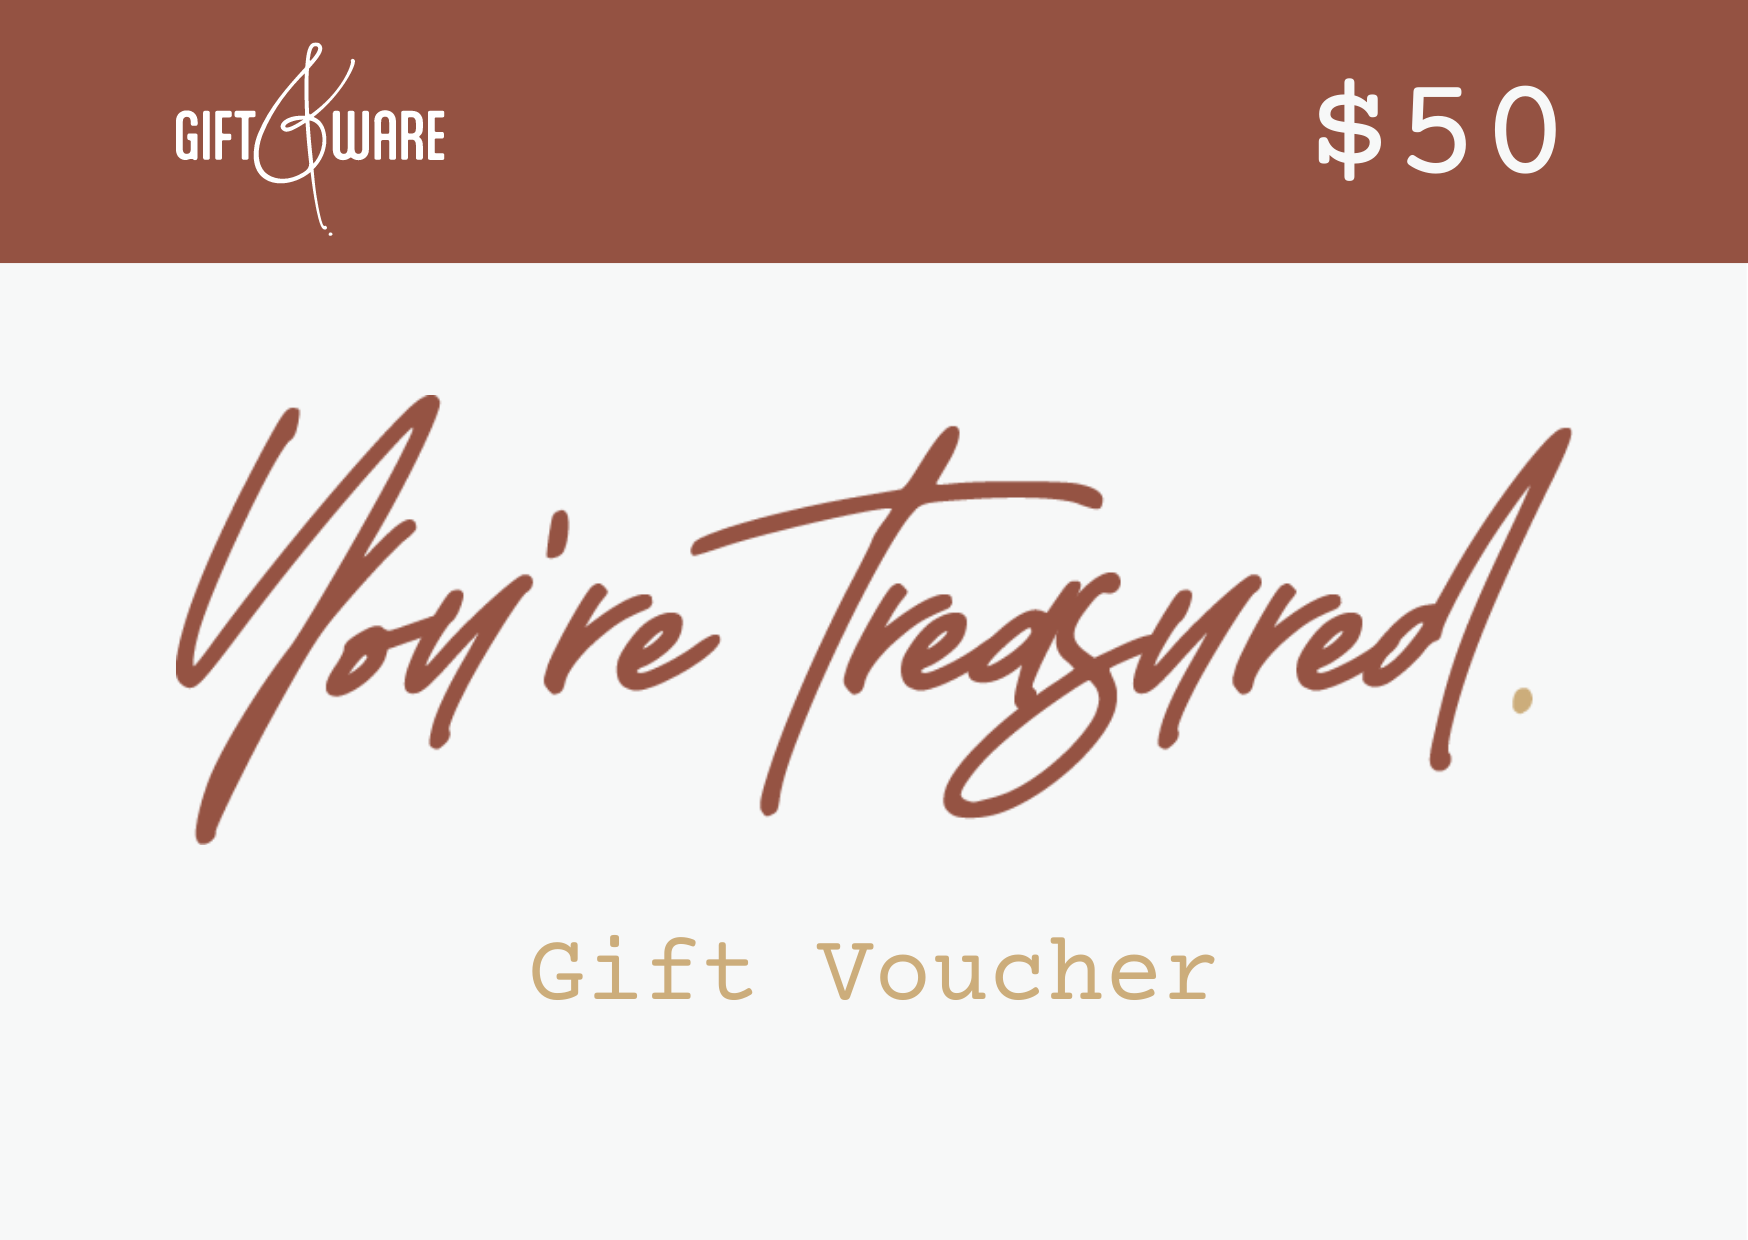 Gift&Ware Gift Voucher for $50